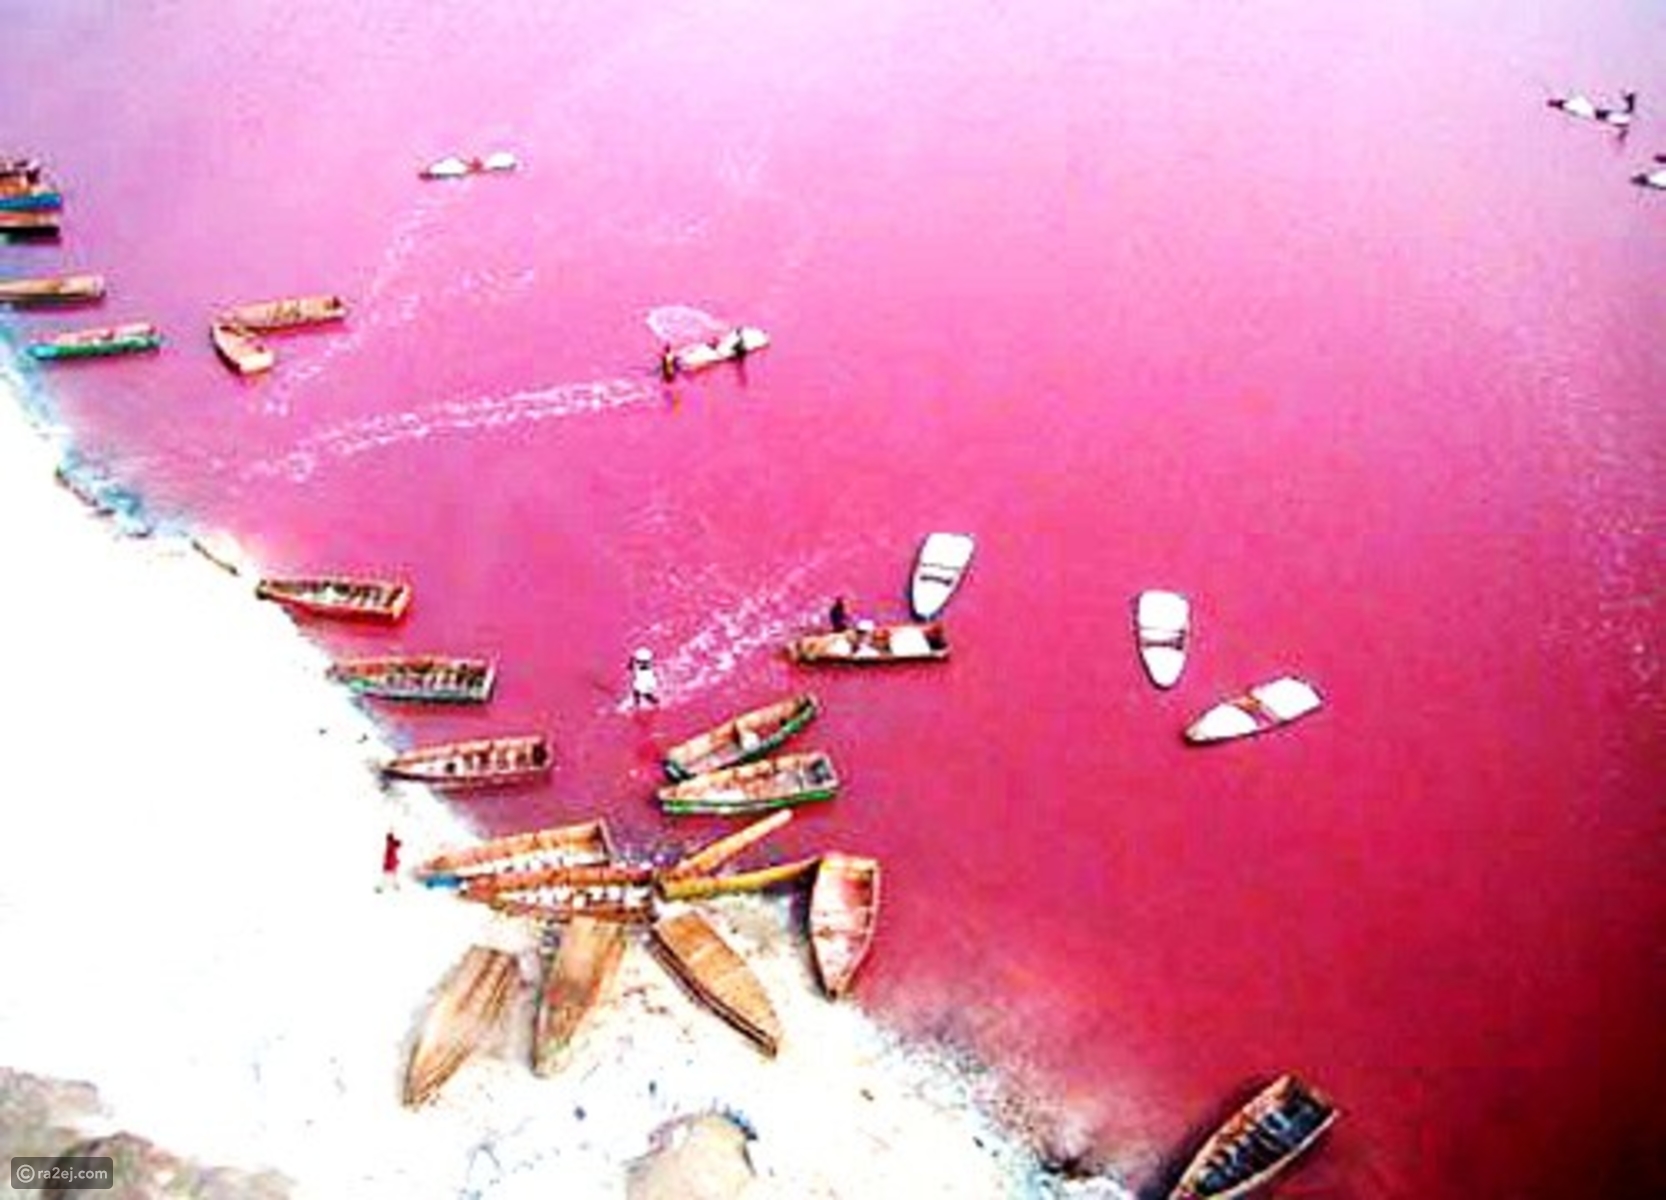 بحيرة هيلير أو البحيرة الوردية في غرب أستراليا 939414f0d4c7a07a0e1f28e8e0dccbfef98d4031-041016125312.jpg?preset=v3